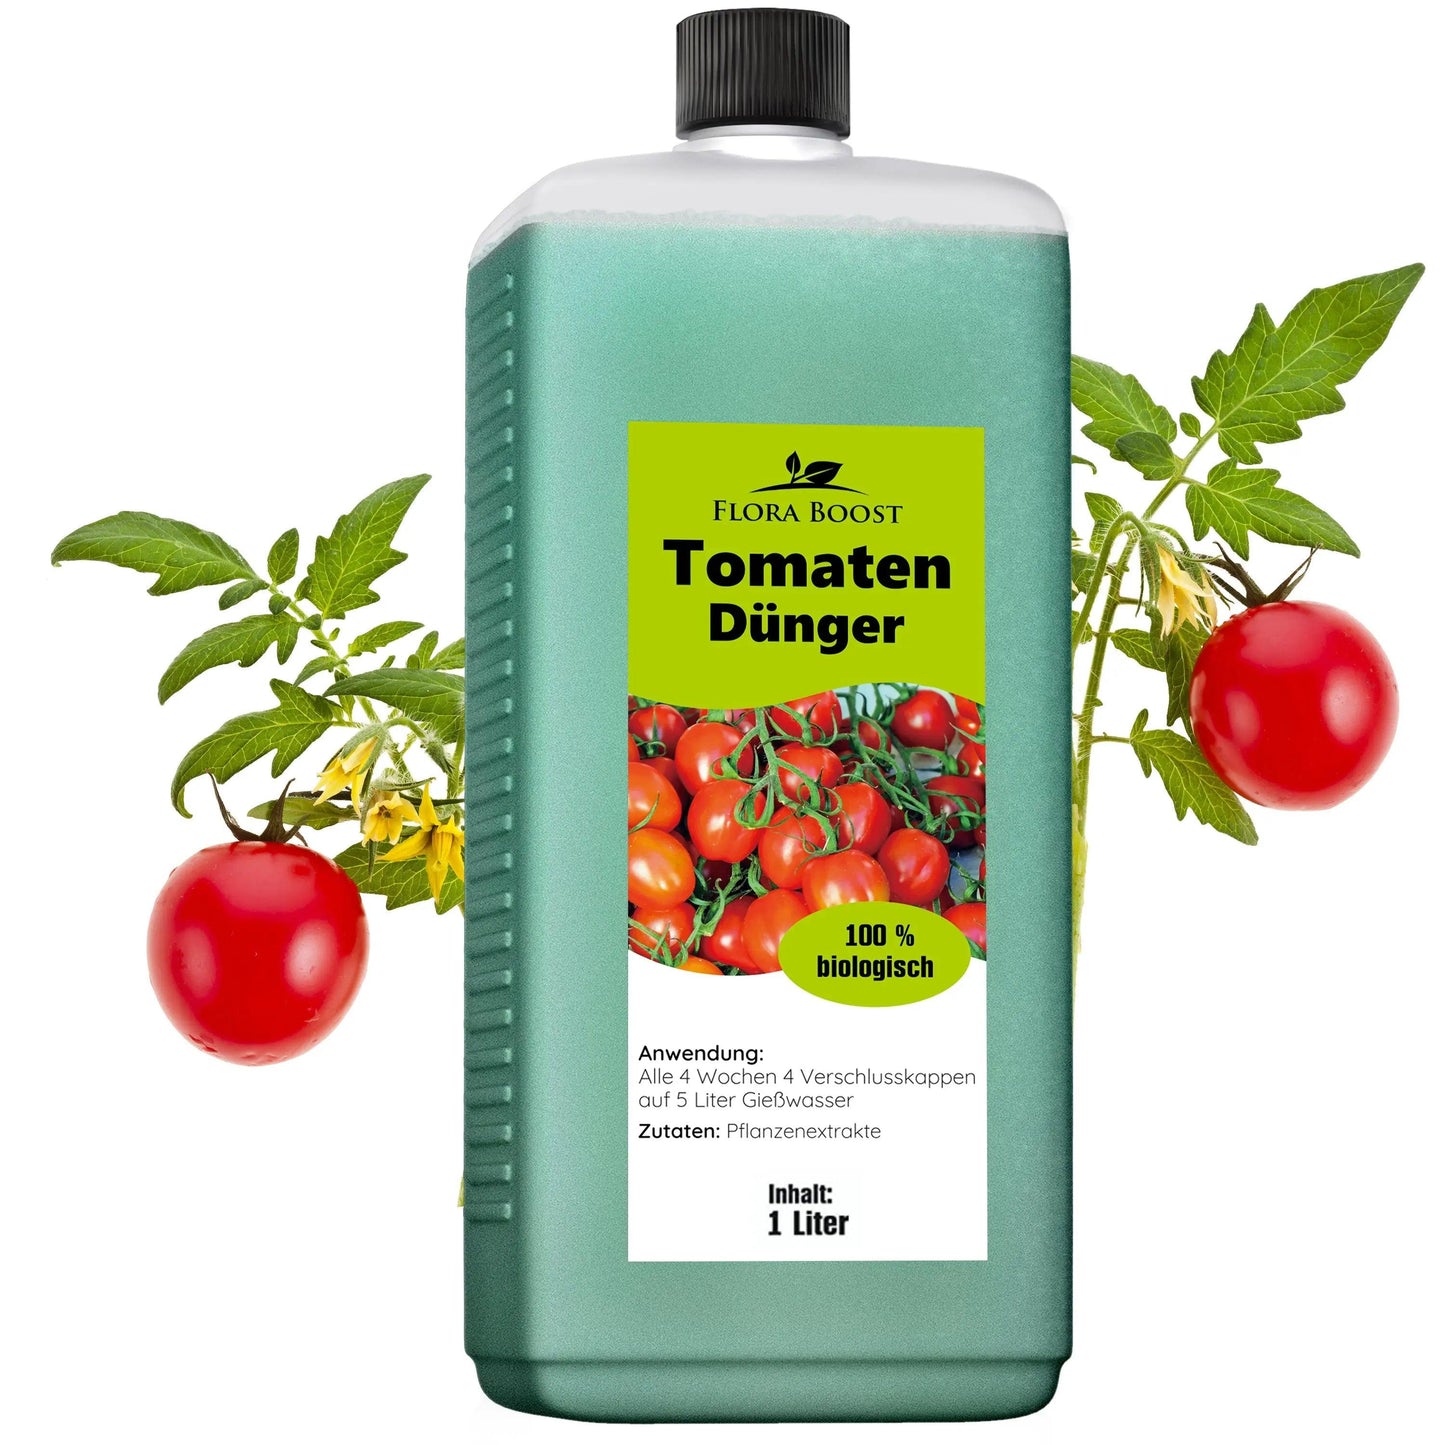 Tomaten Pflanzen Dünger für mehr Ertrag und gegen Krankheiten - Flora Boost